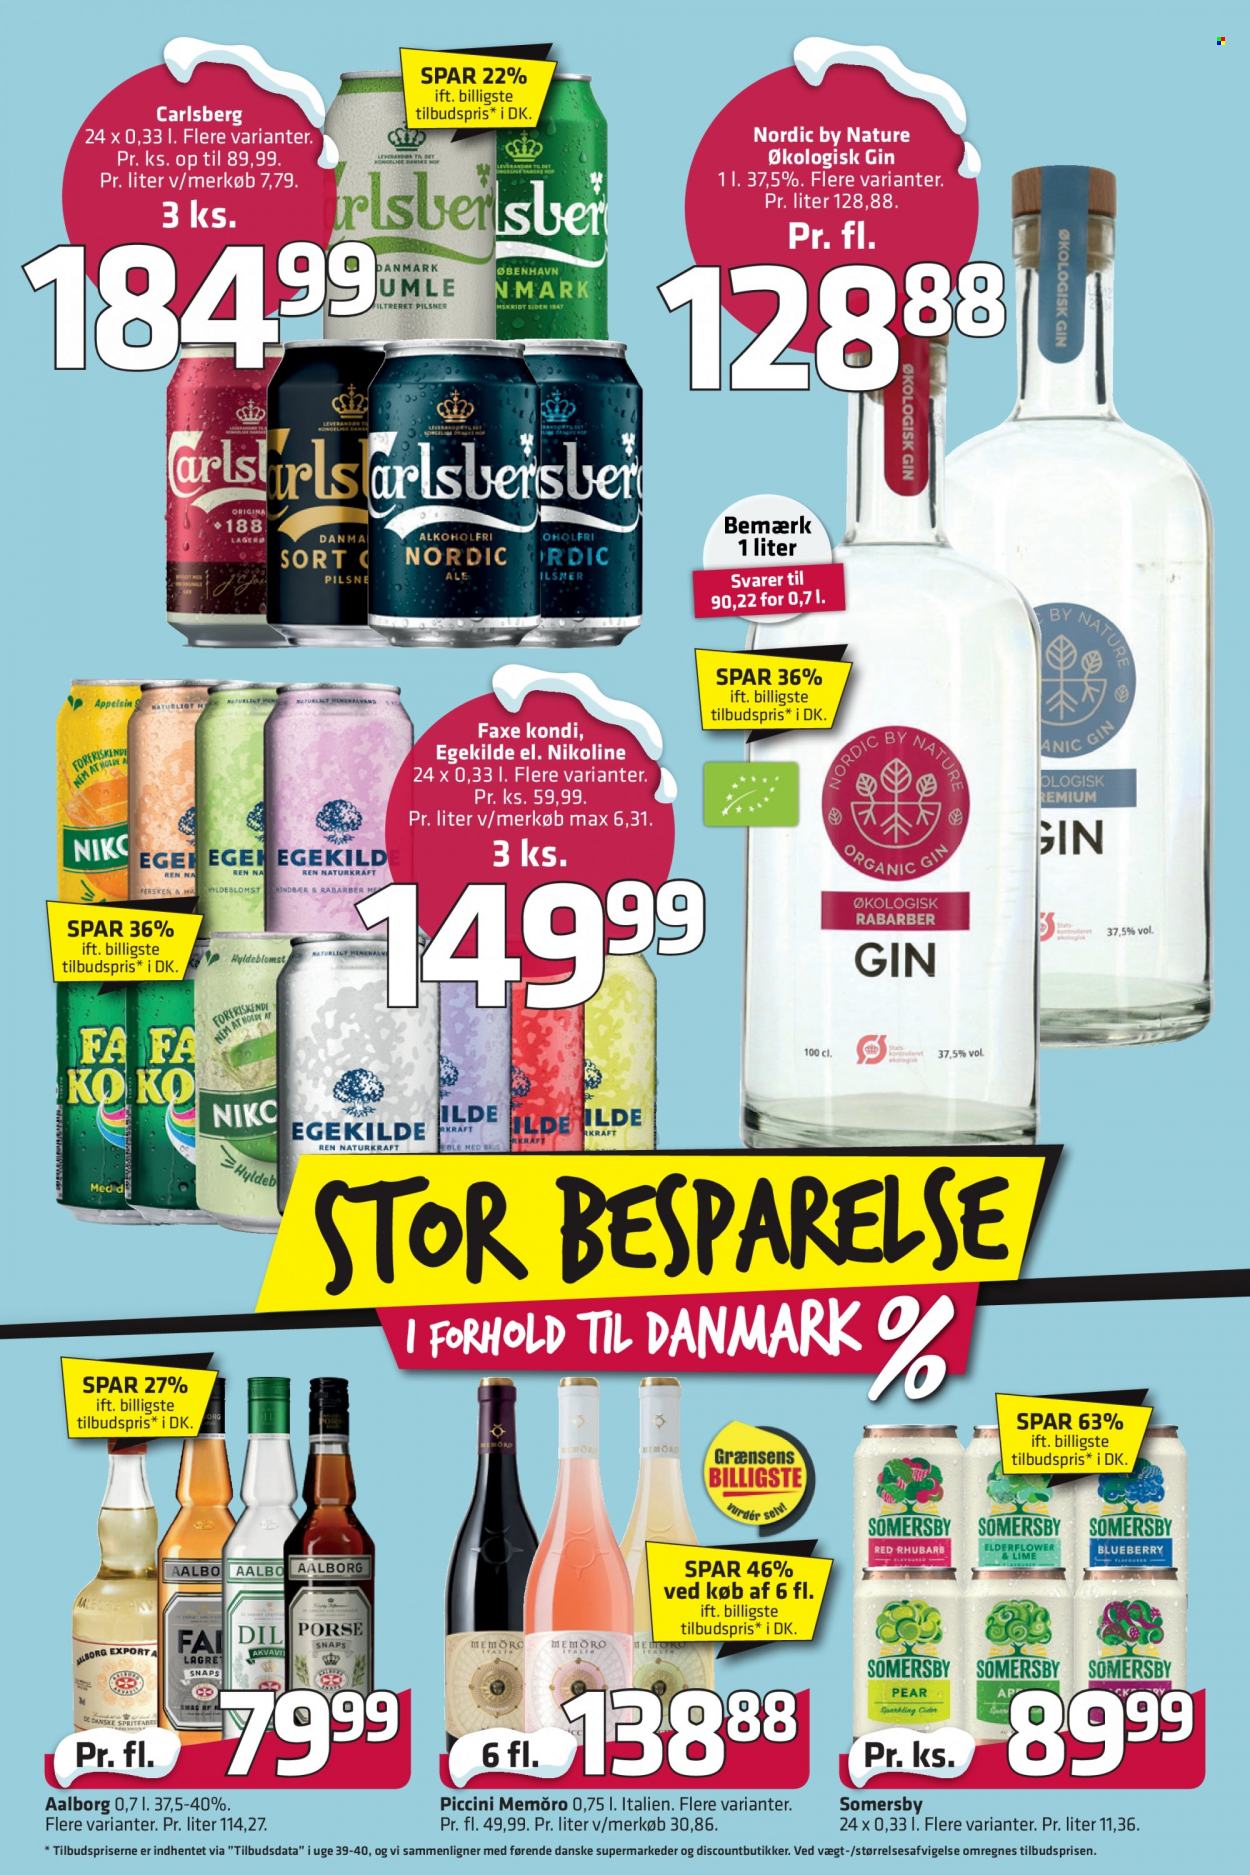 thumbnail - Fleggaard tilbud  - 24.11.2021 - 14.12.2021 - tilbudsprodukter - Carlsberg, øl, Faxe Kondi, Aalborg, gin. Side 3.